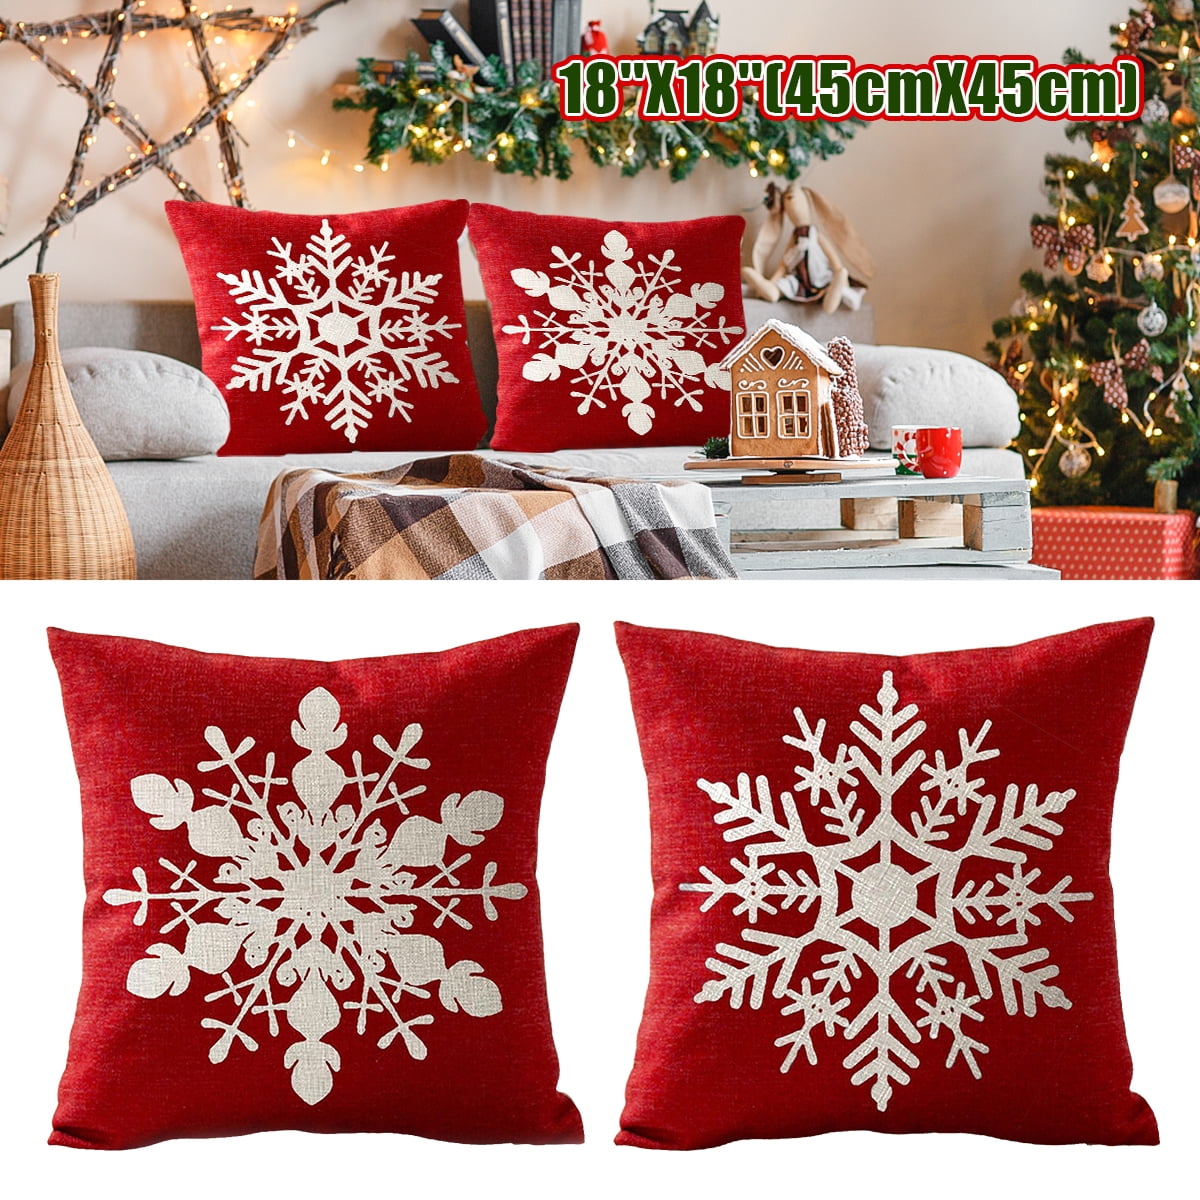 Home Christmas Deer Tree Soft Throw Cushion Pillow Cover Home Sofa Black Decor 